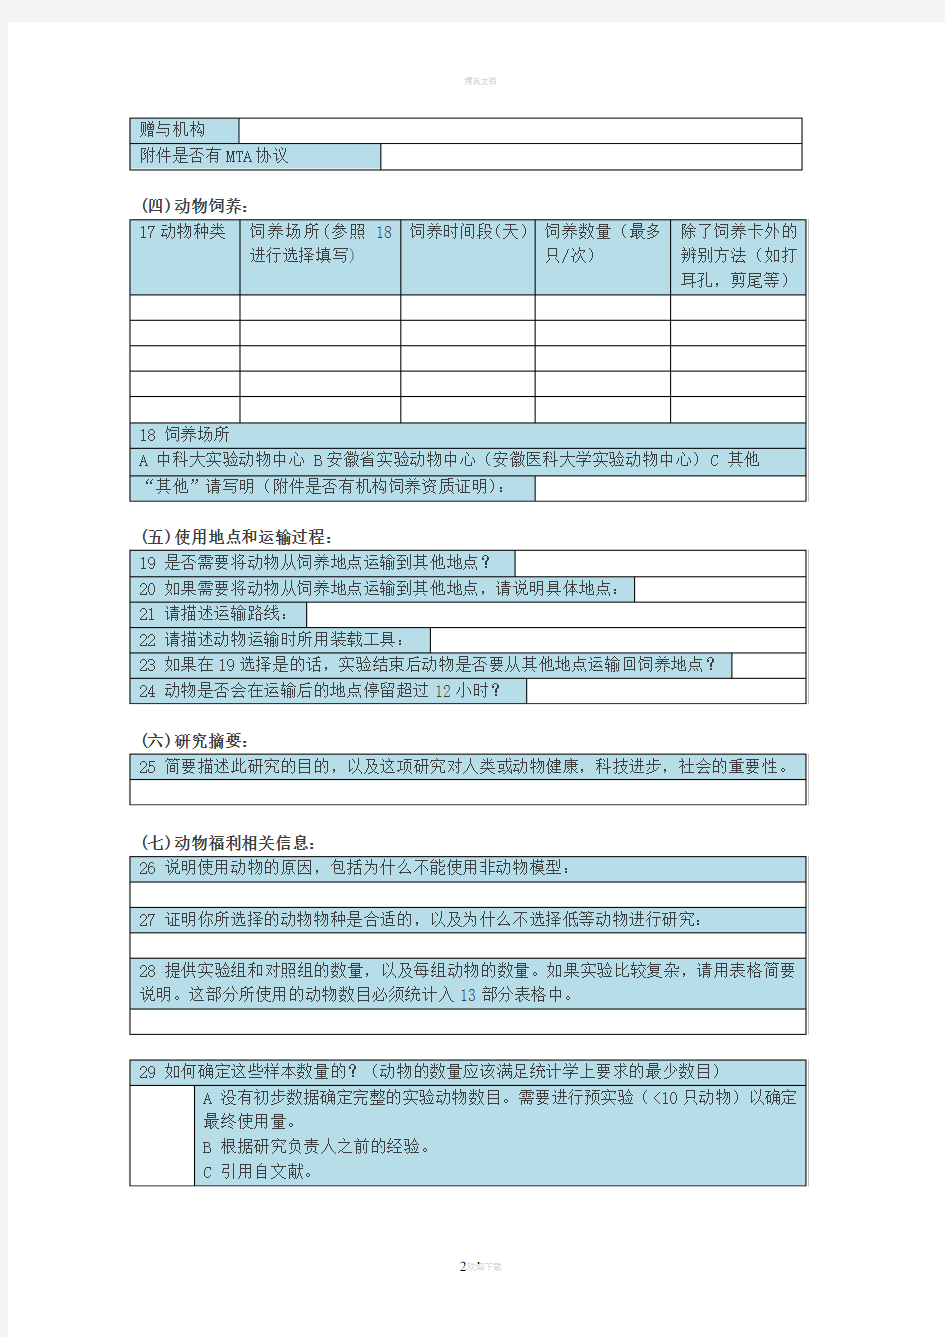 中国科大动物使用审查申请表-中国科学技术大学生命科学学院